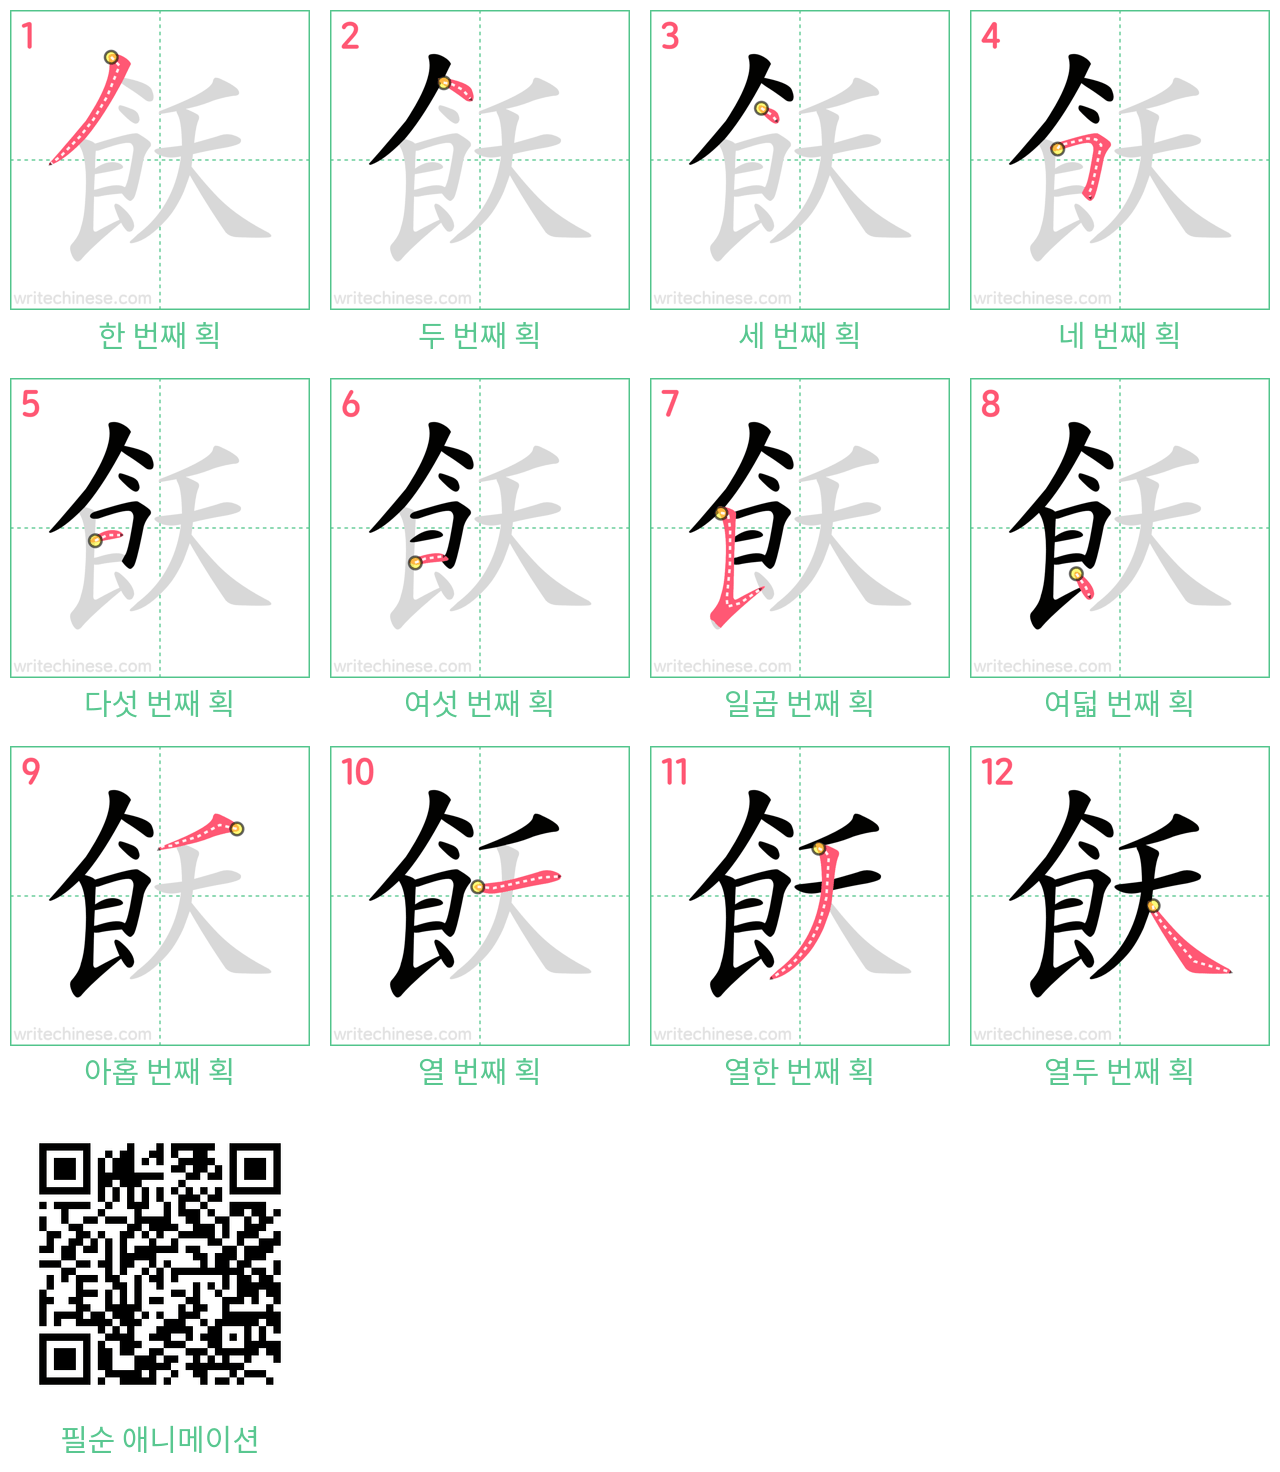 飫 step-by-step stroke order diagrams